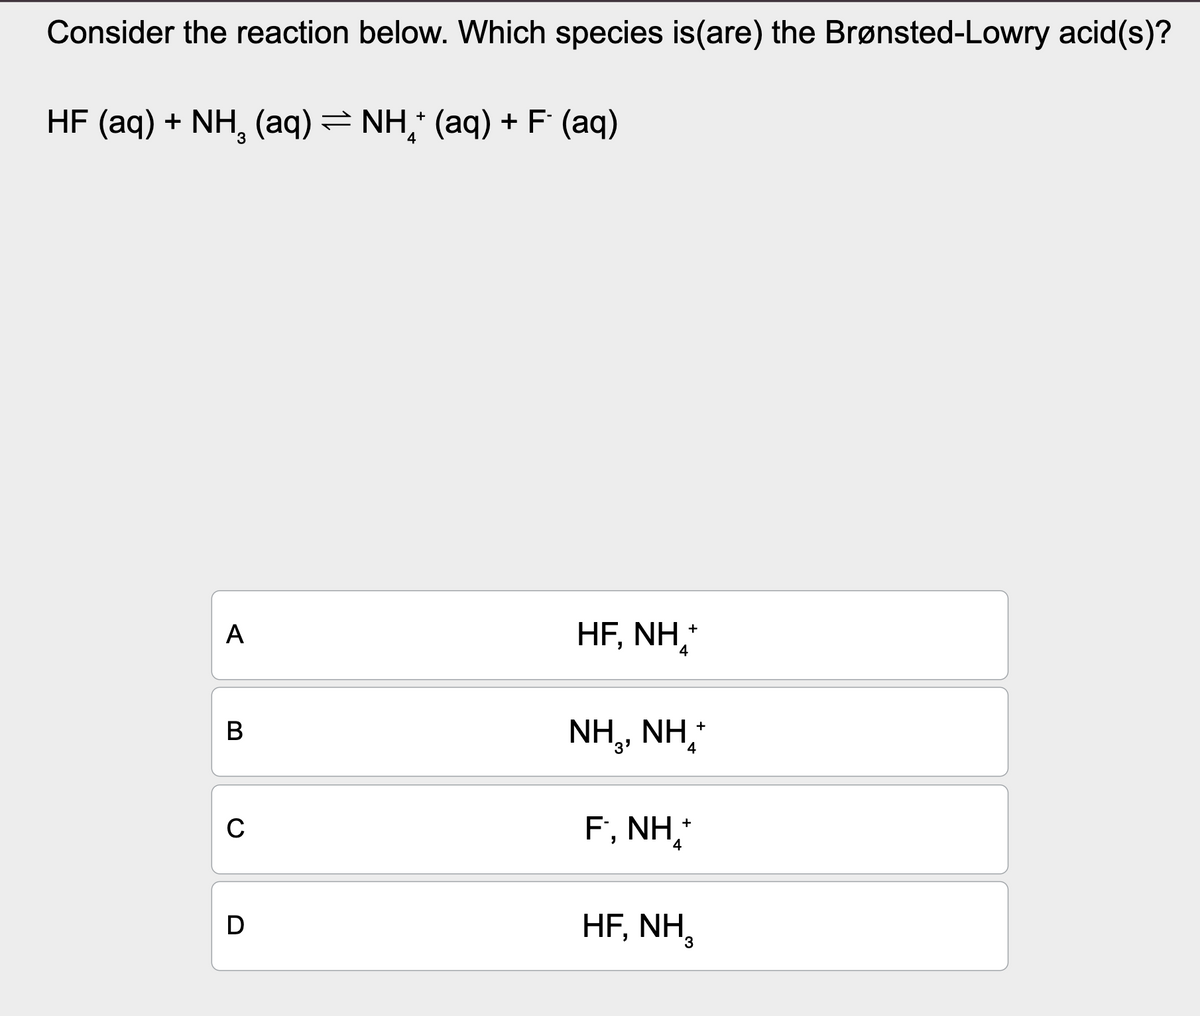 Consider the reaction below. Which species is (are) the Brønsted-Lowry acid(s)?
HF (aq) + NH (aq) = NH+ (aq) + F (aq)
A
HF, NH
+
4
B
C
D
NH,, NH,
F., NH₁*+*
4
HF, NH,
+